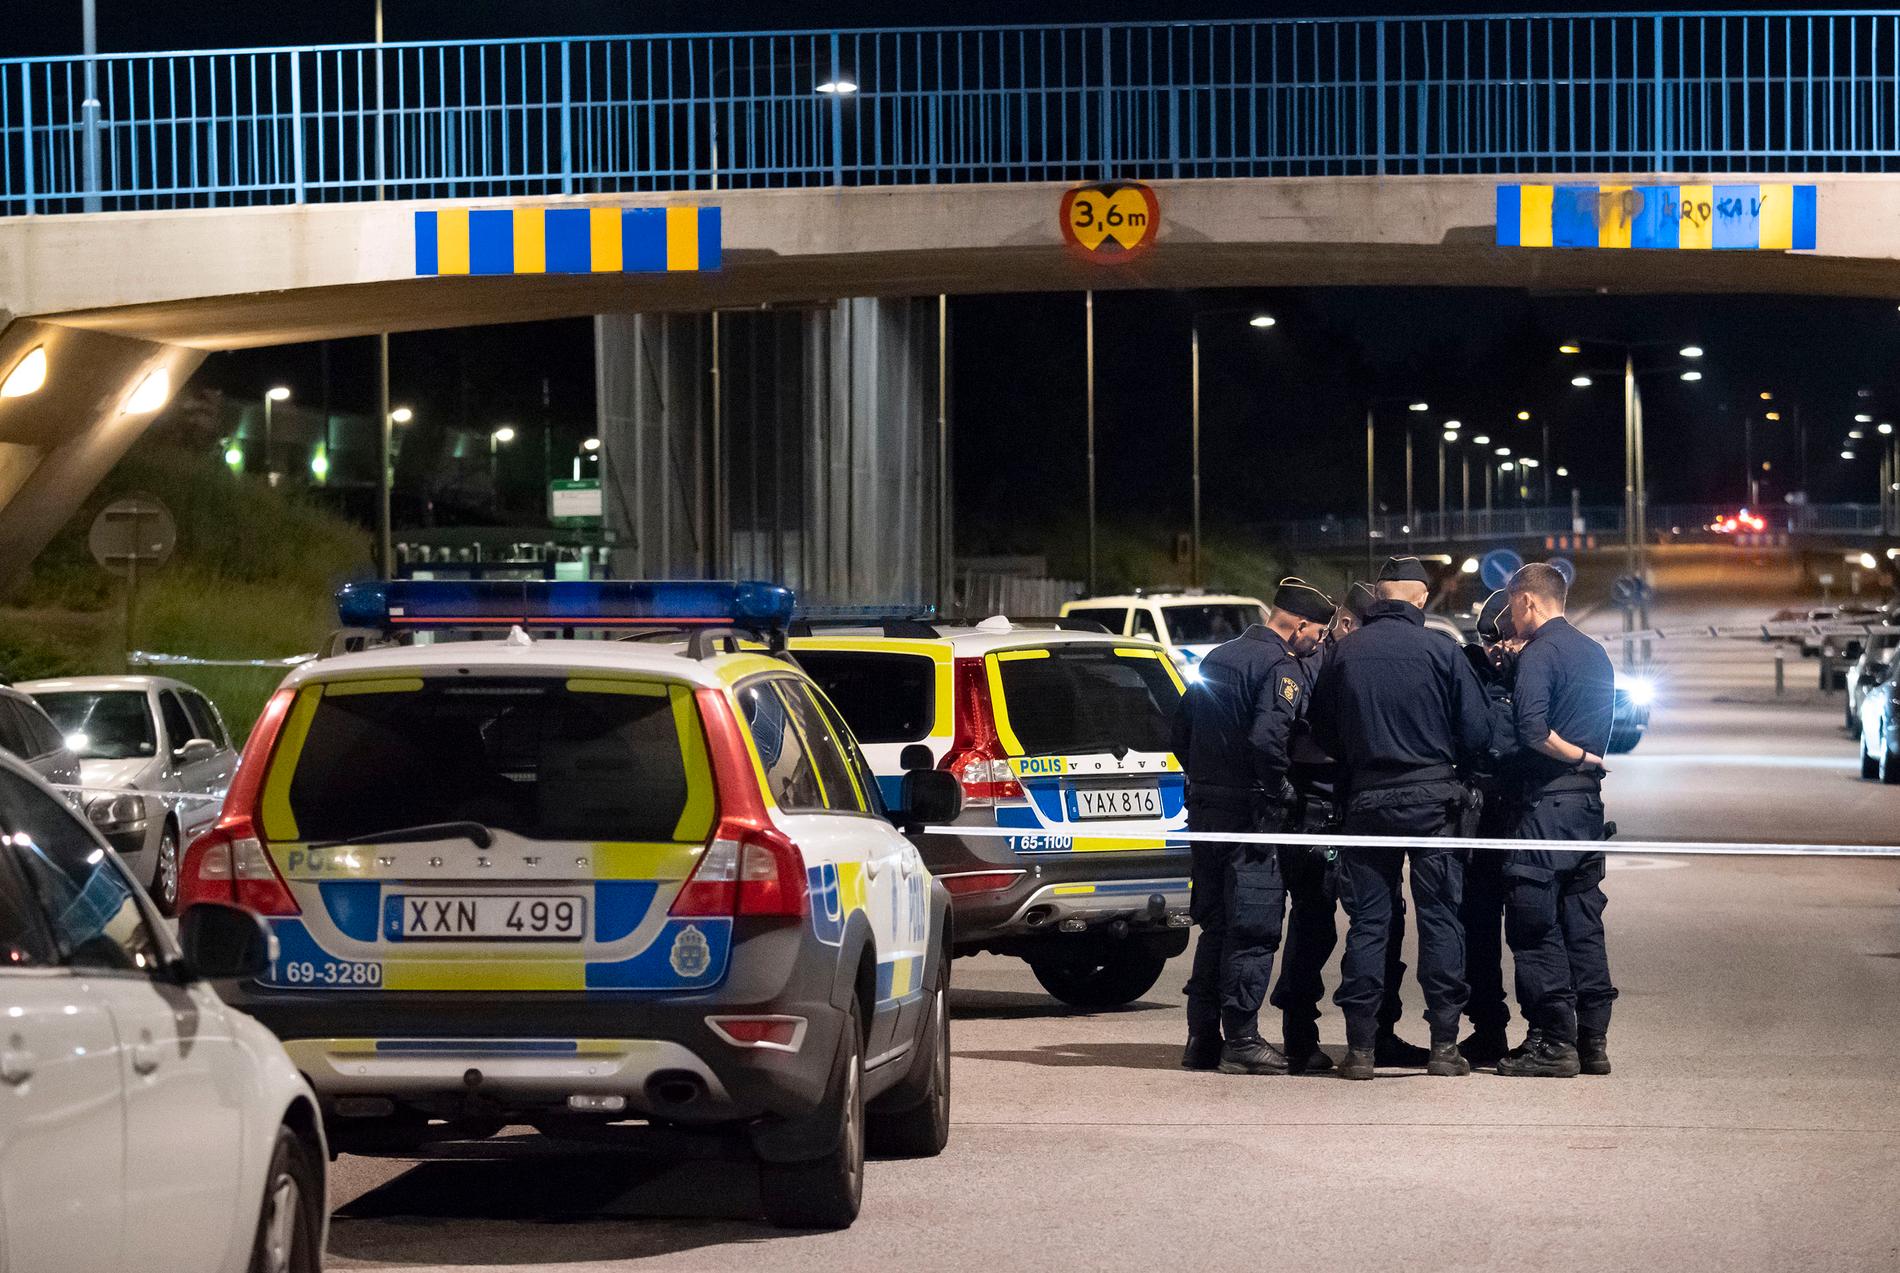 Polis och kriminaltekniker på plats på en gångbana utmed Hyllievångsvägen på Kroksbäck i Malmö efter en skottlossning natten till måndagen. Polisen meddelade vid 02-tiden på måndagsmorgonen att en person avlidit dog av sina skador efter skottlossningen. 